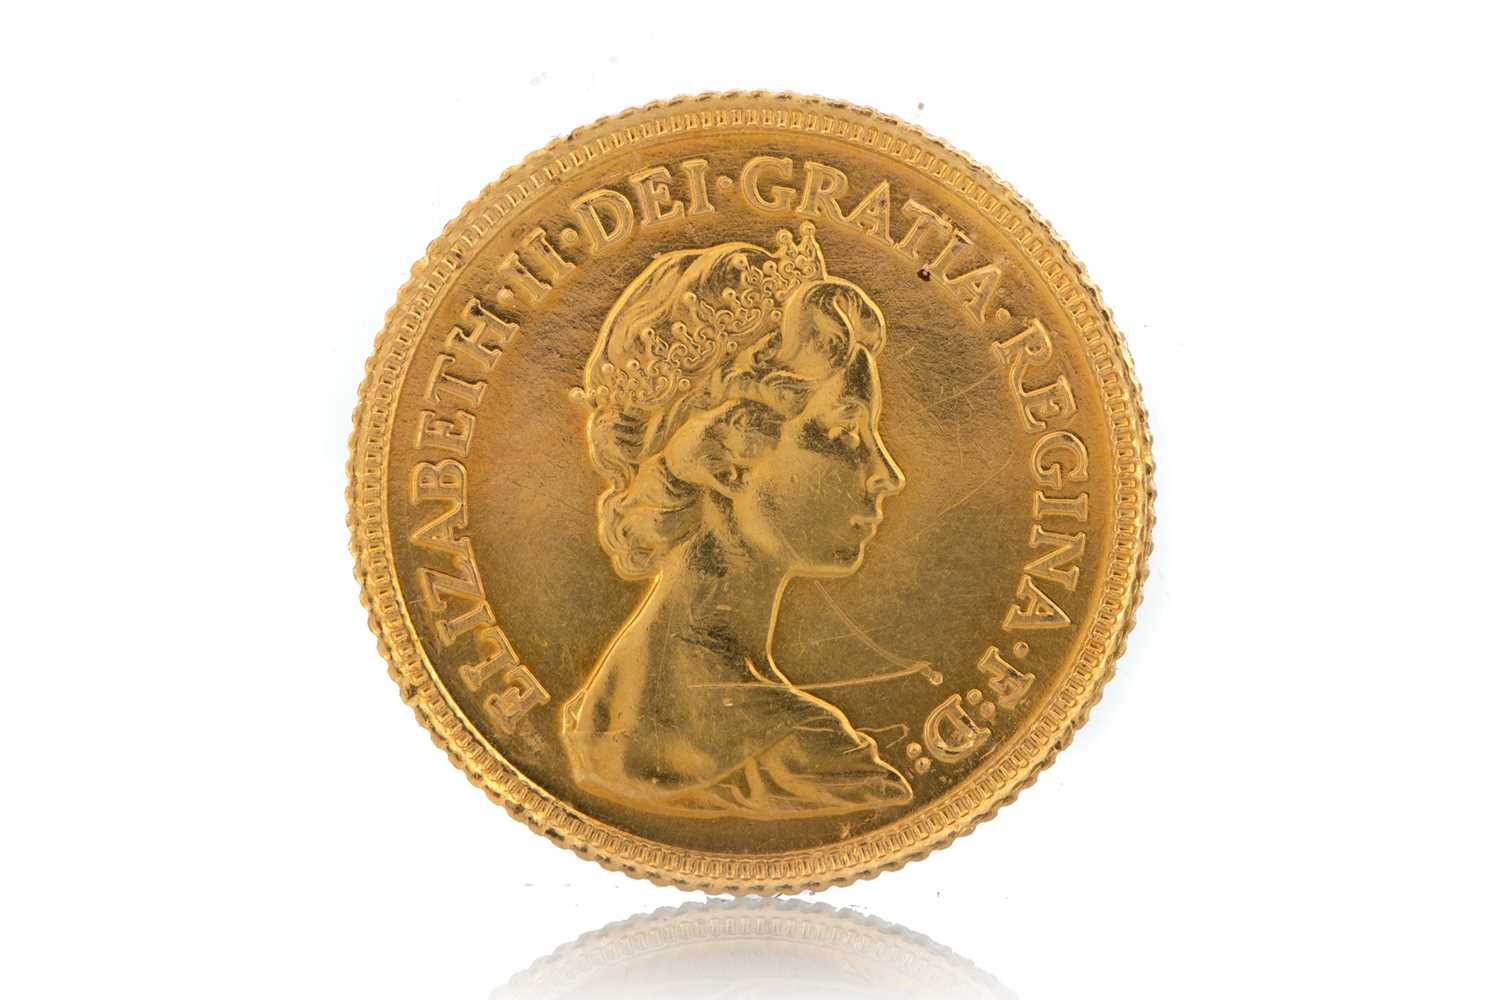 ELIZABETH II HALF GOLD SOVEREIGN, - Image 2 of 2